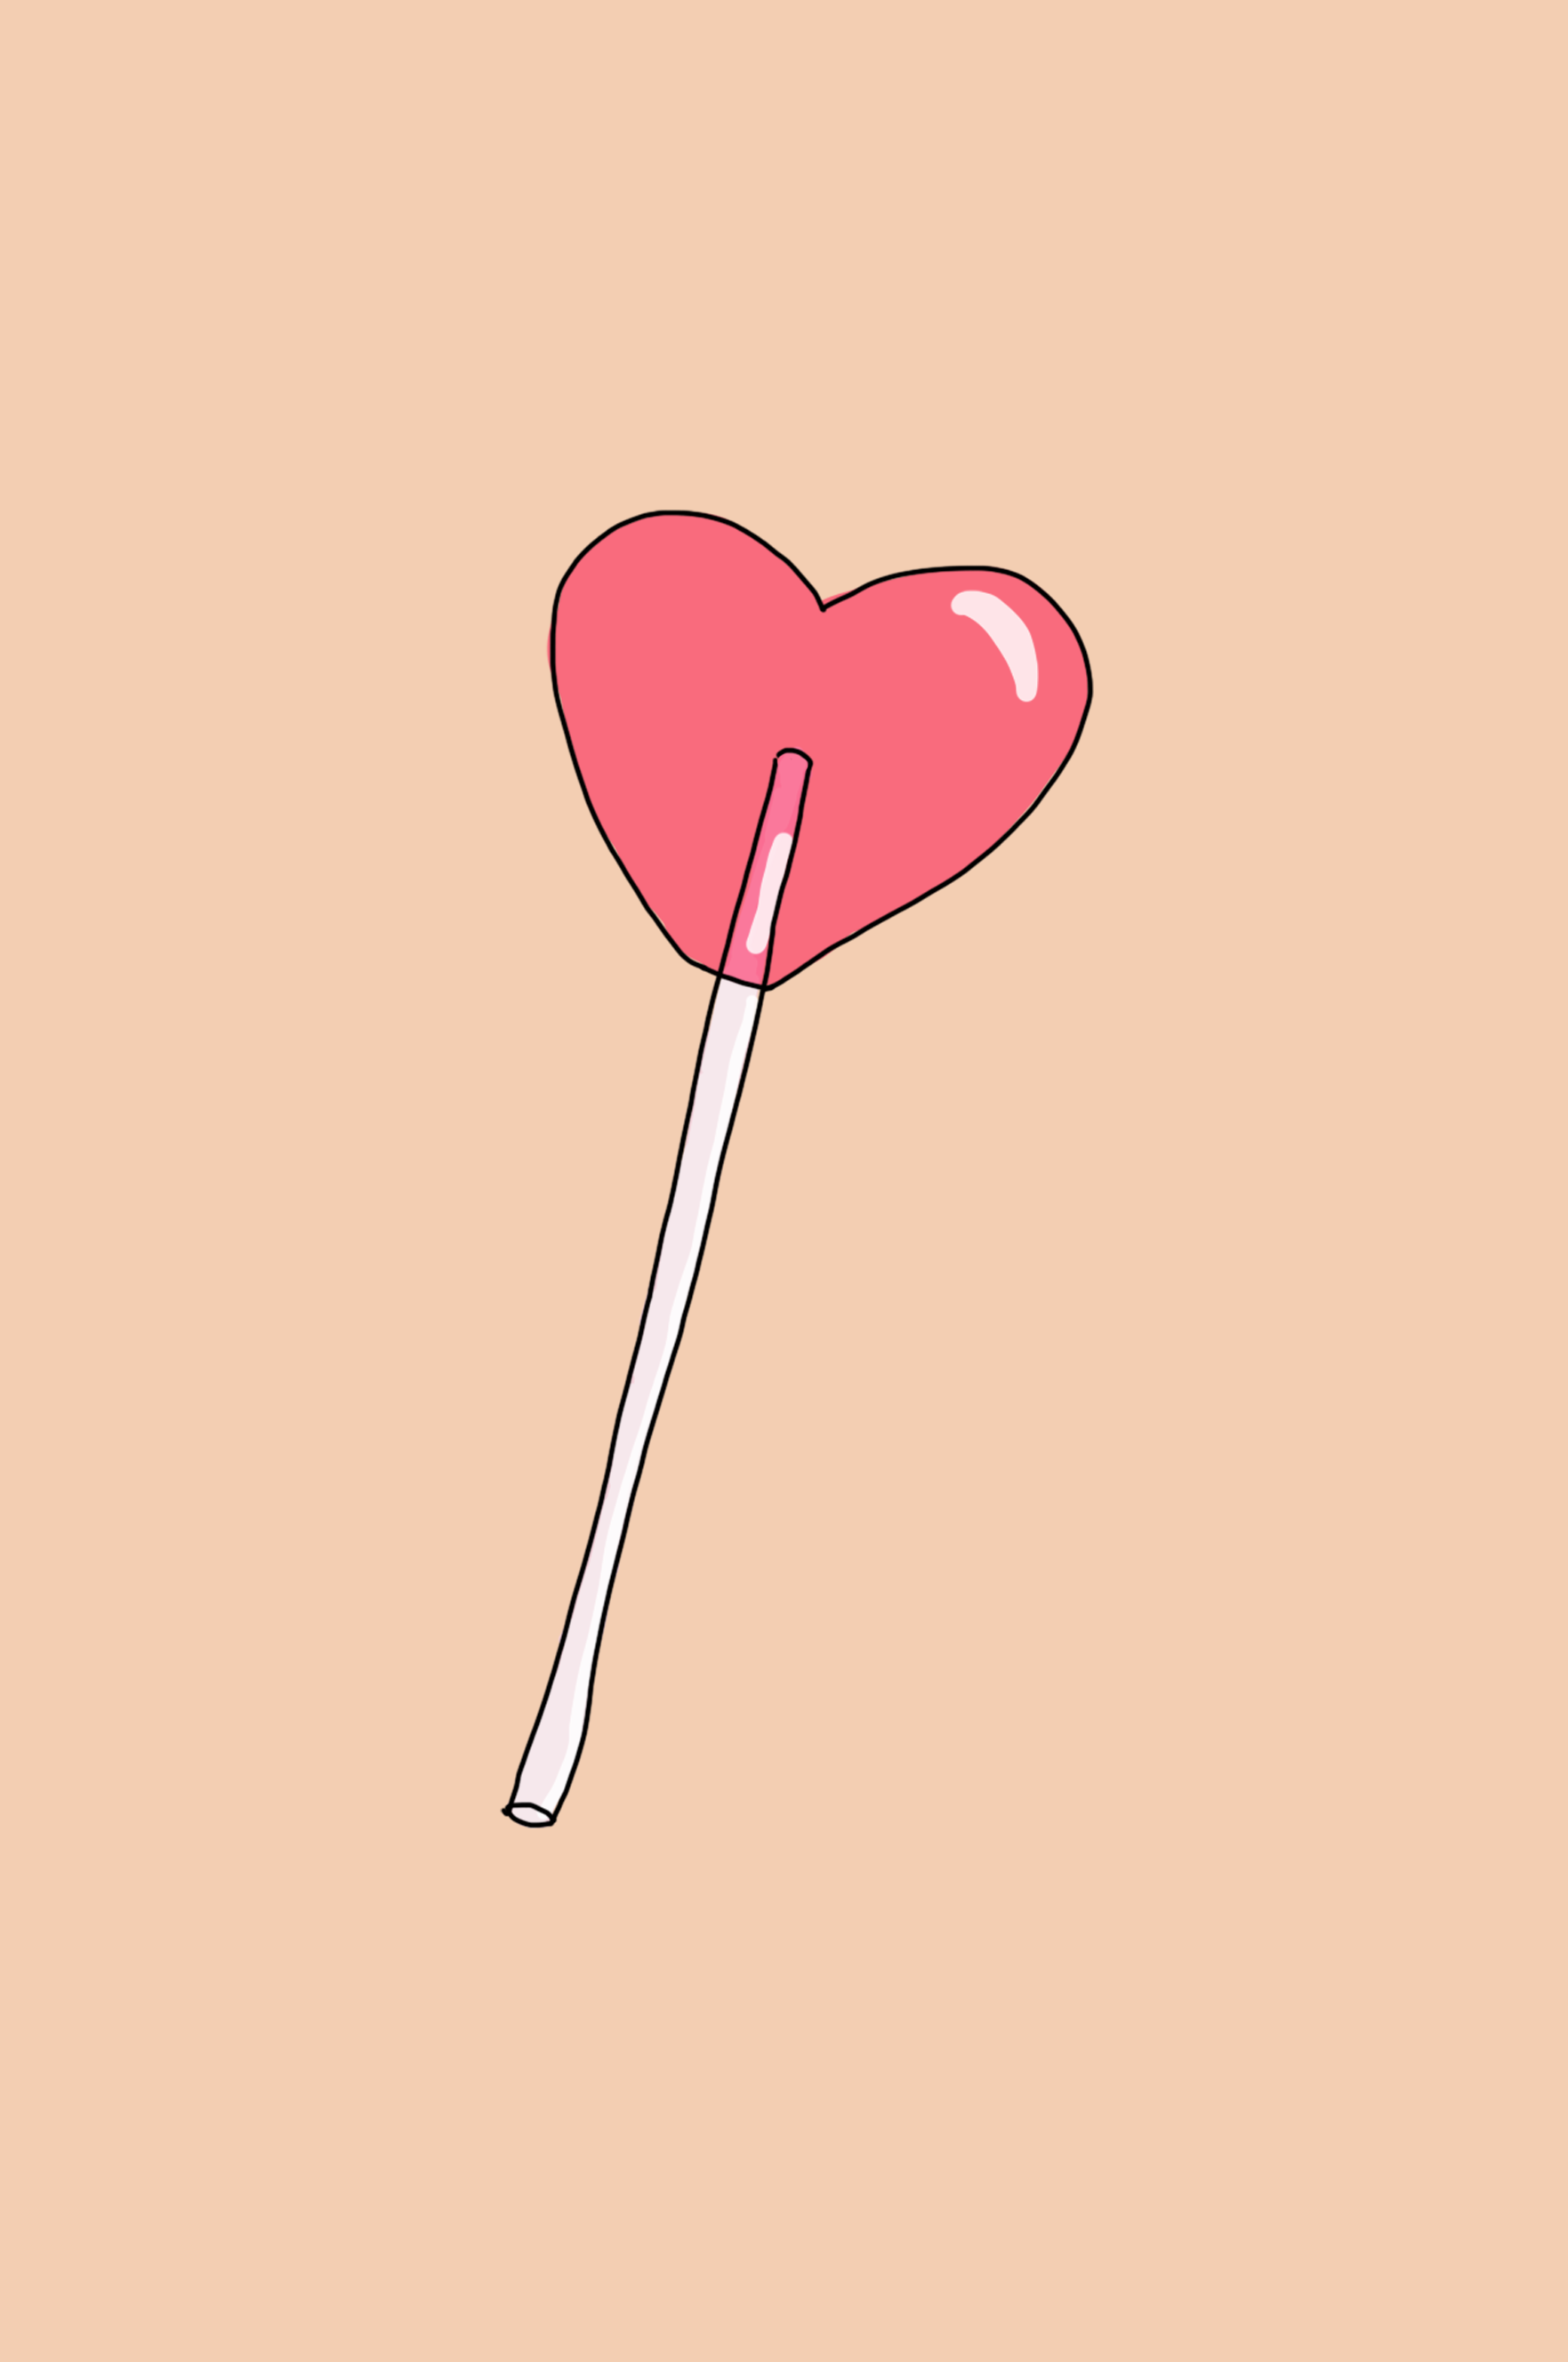 Drawling of a heart lollipop.